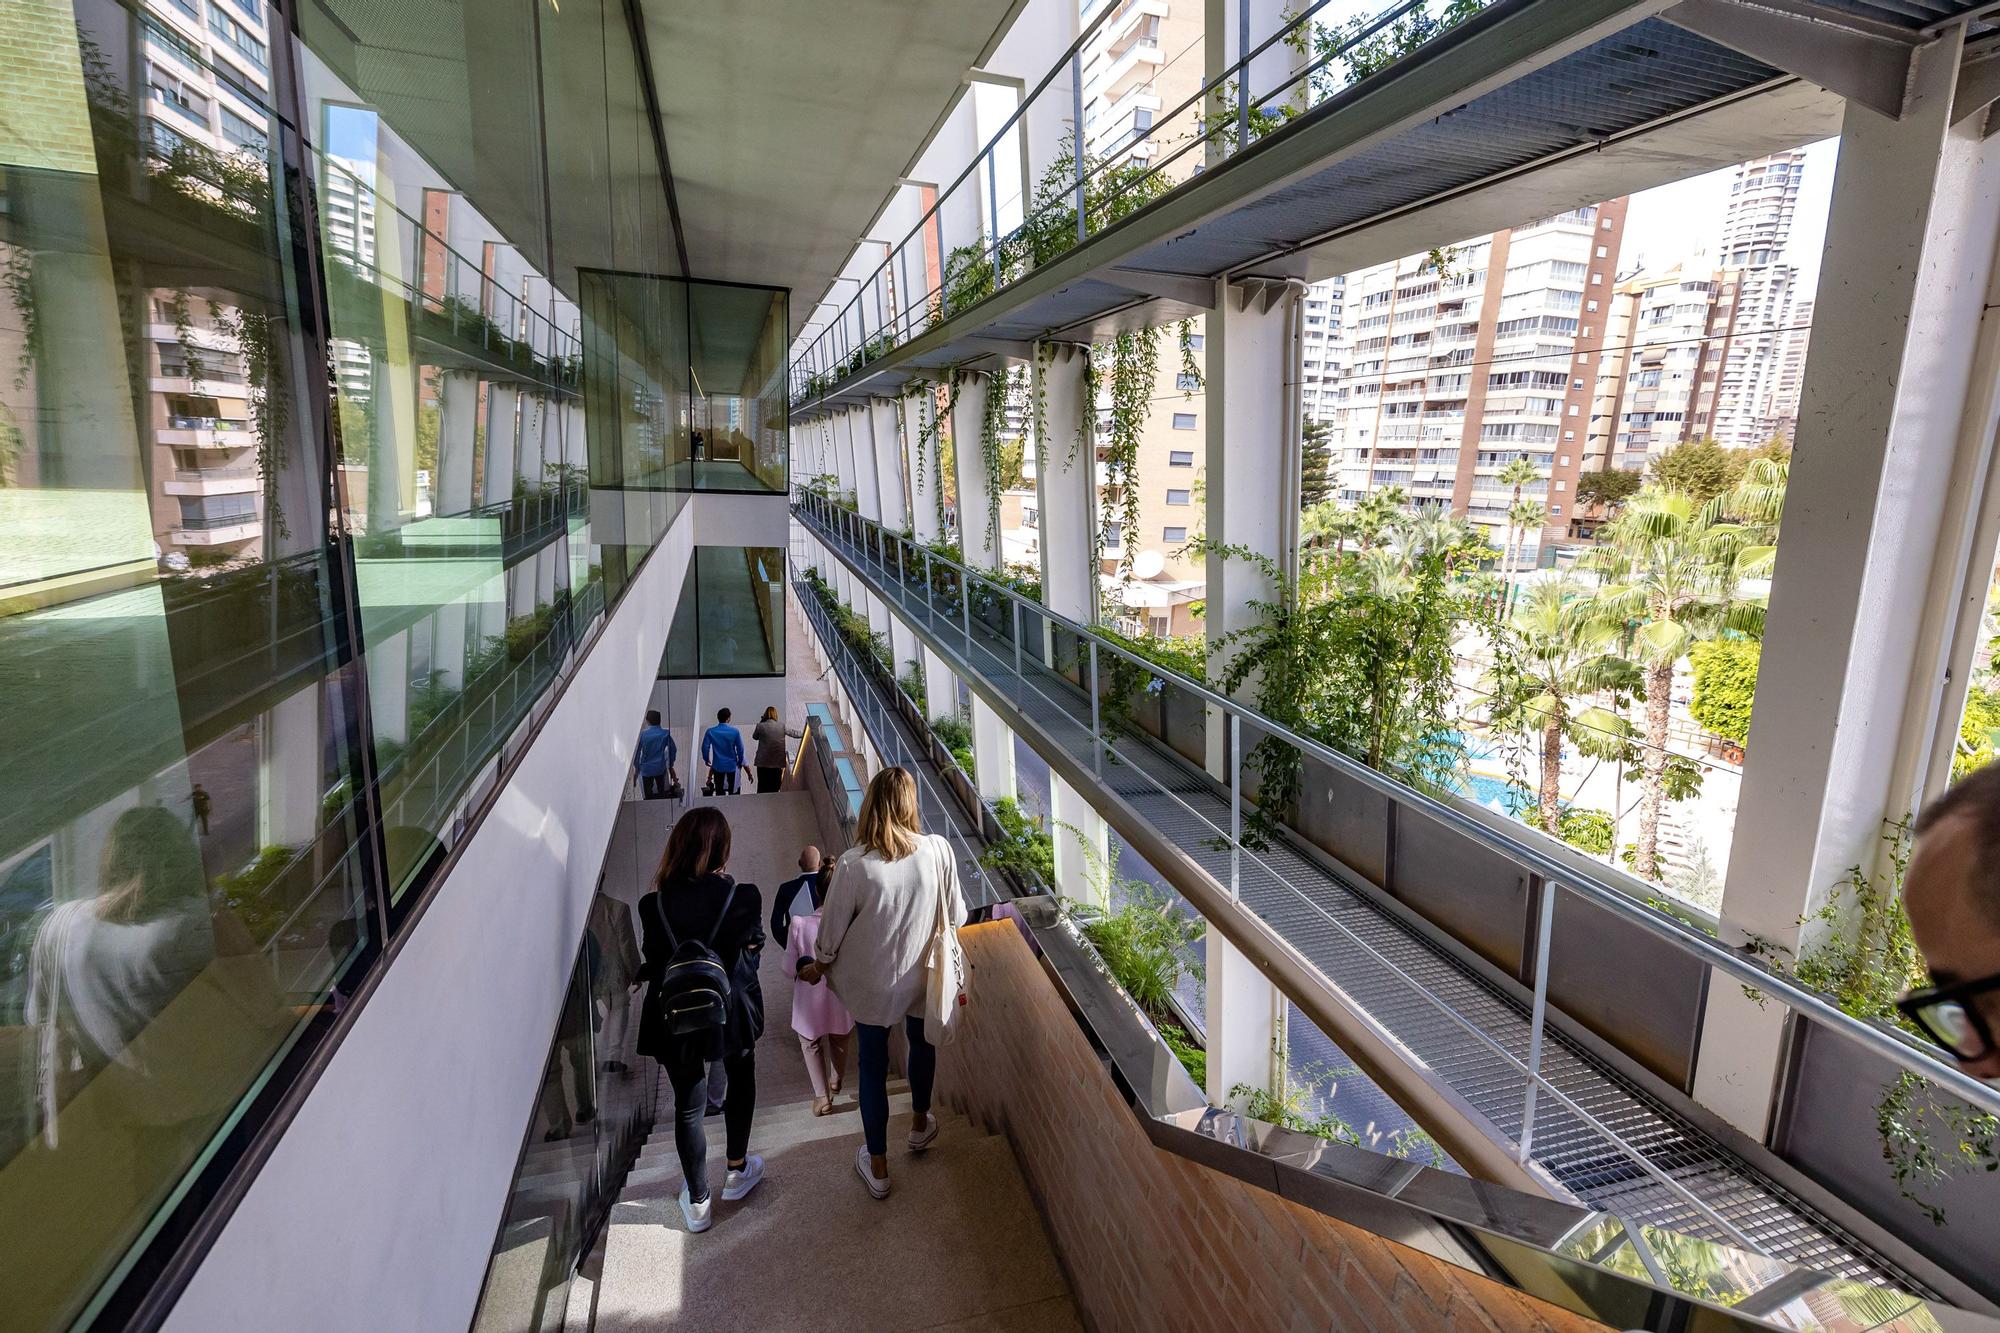 La Generalitat ha destinado 12,7 millones al Conservatorio de Música y Danza de la primera fase del edificio cuya construcción llevaba diez años paralizada